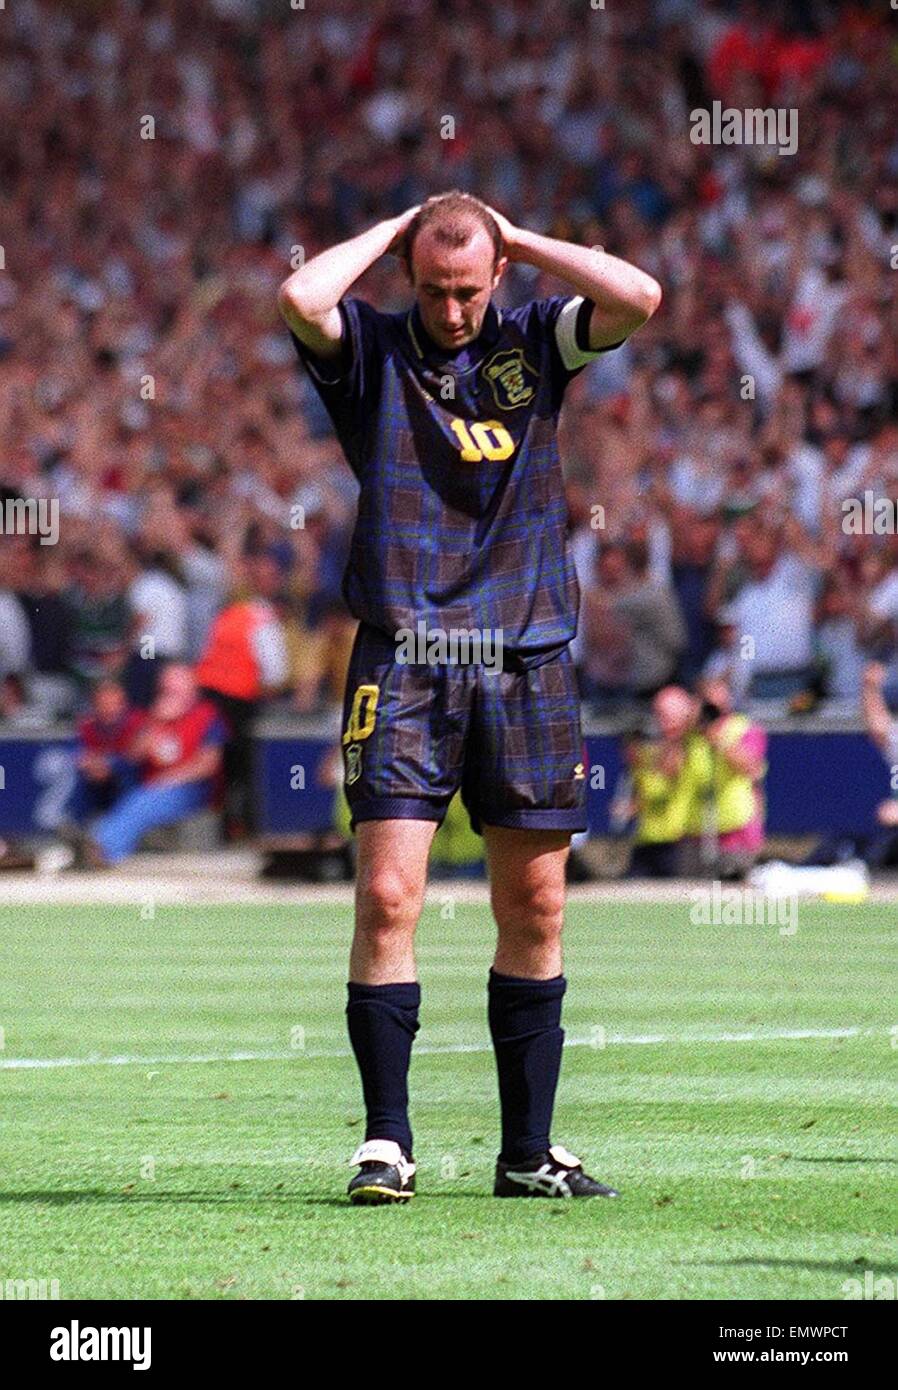 Gary Mcallister rate la chance d'égaliser avec un tir de pénalité au cours de l'Angleterre v Ecosse match de l'Euro de football 1996 Banque D'Images